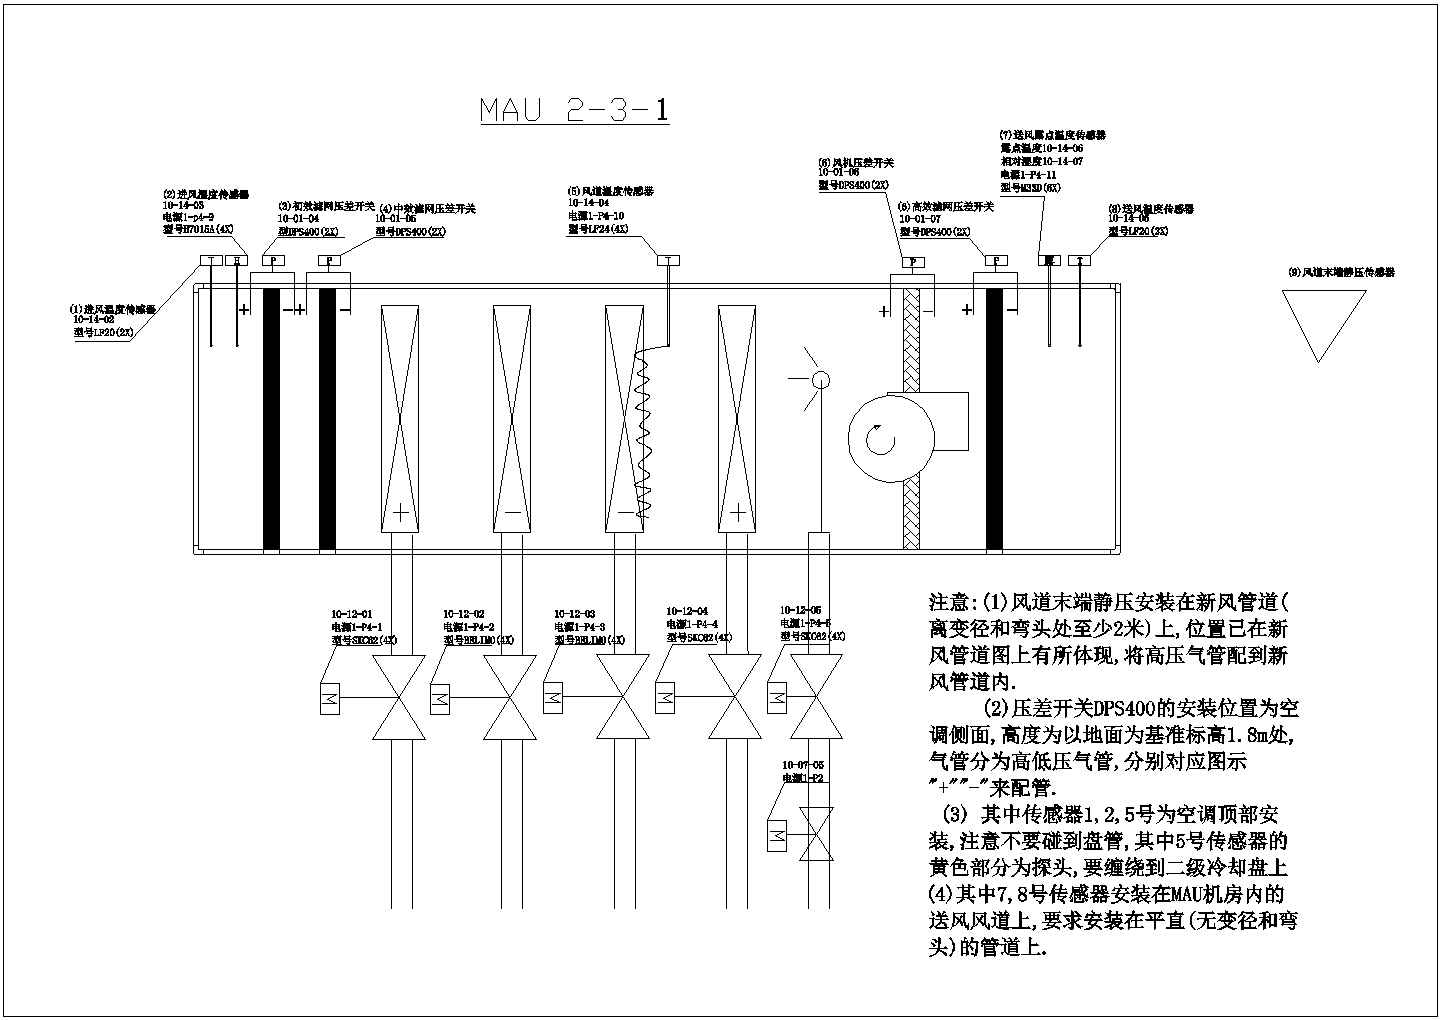 上海某半导体公司空调设计cad图